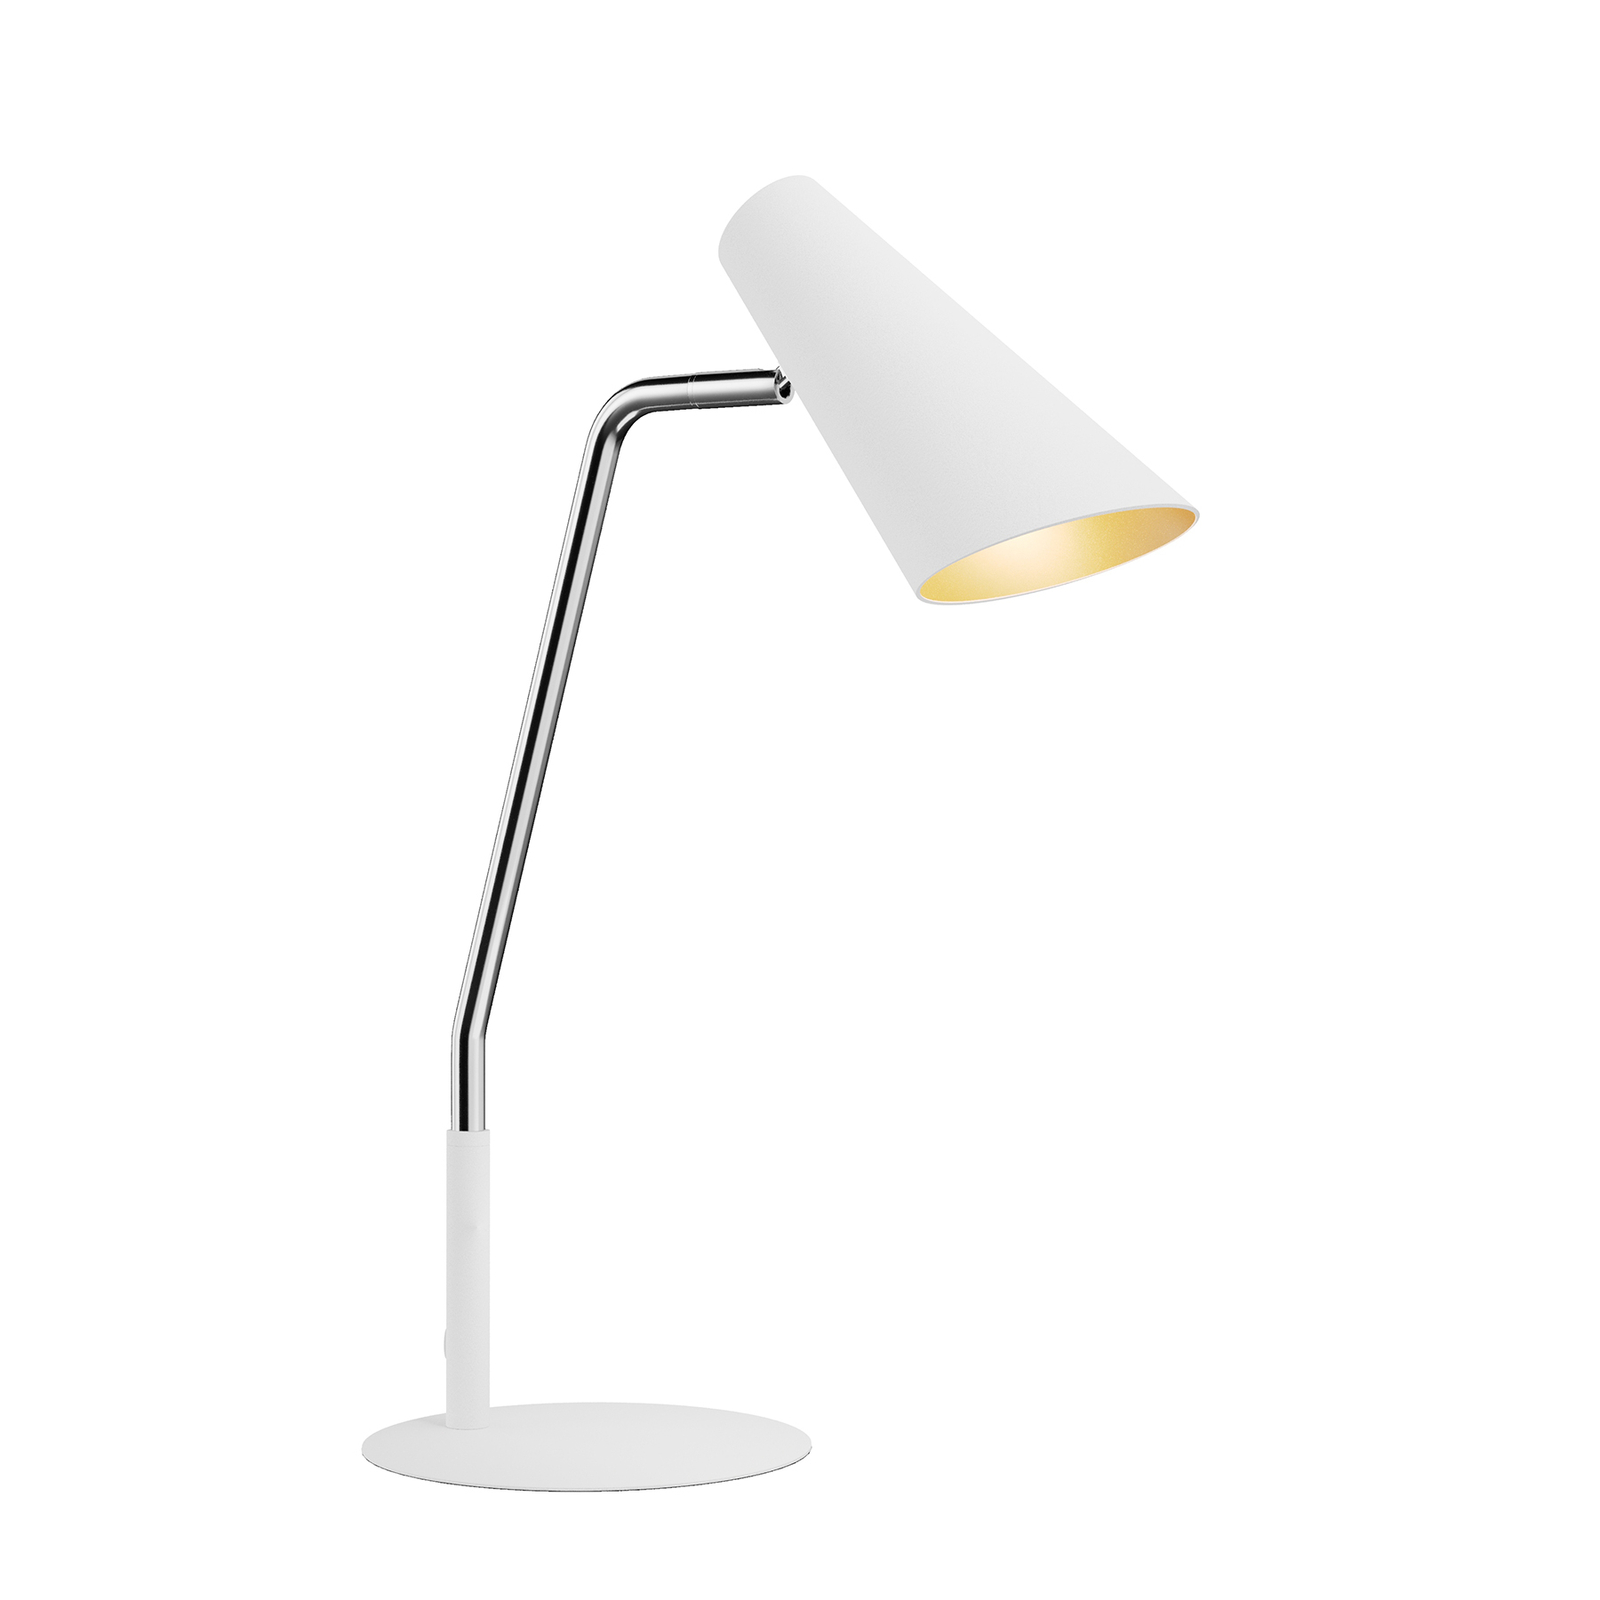 Lucande Wibke stolní lampa v bílé barvě